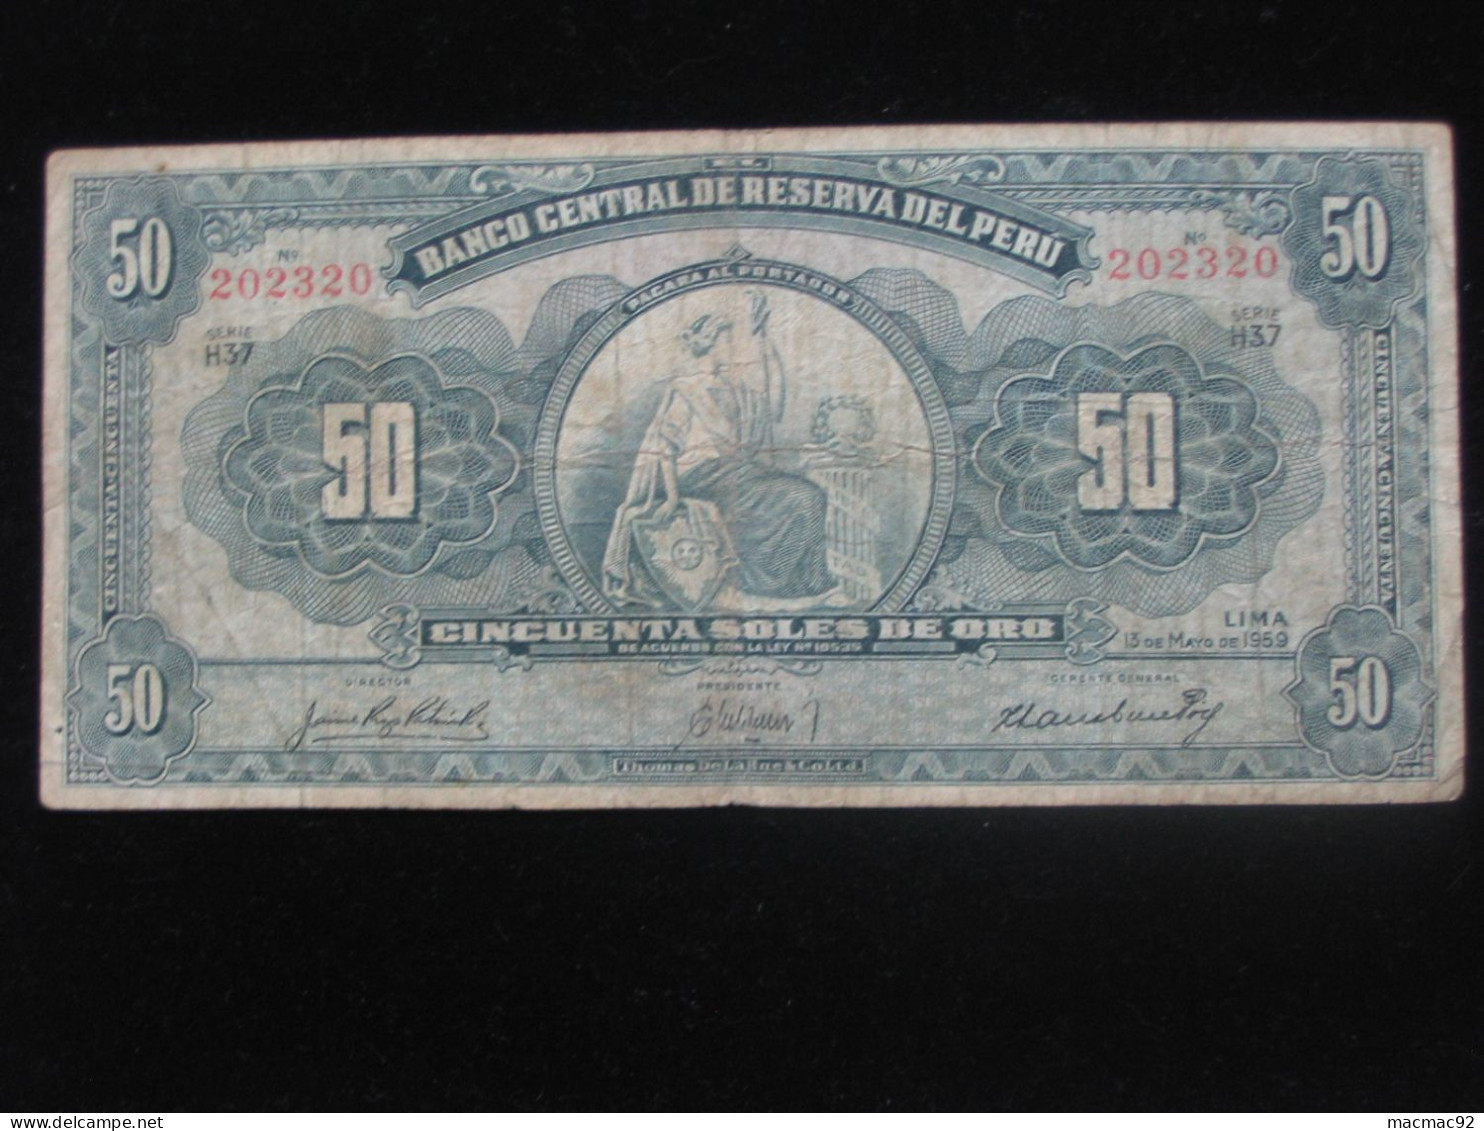 PEROU - 50 CINCUENTA SOLES DE ORO 1967 - Banco Central De Reserva Del Peru  **** EN ACHAT IMMEDIAT **** - Pérou